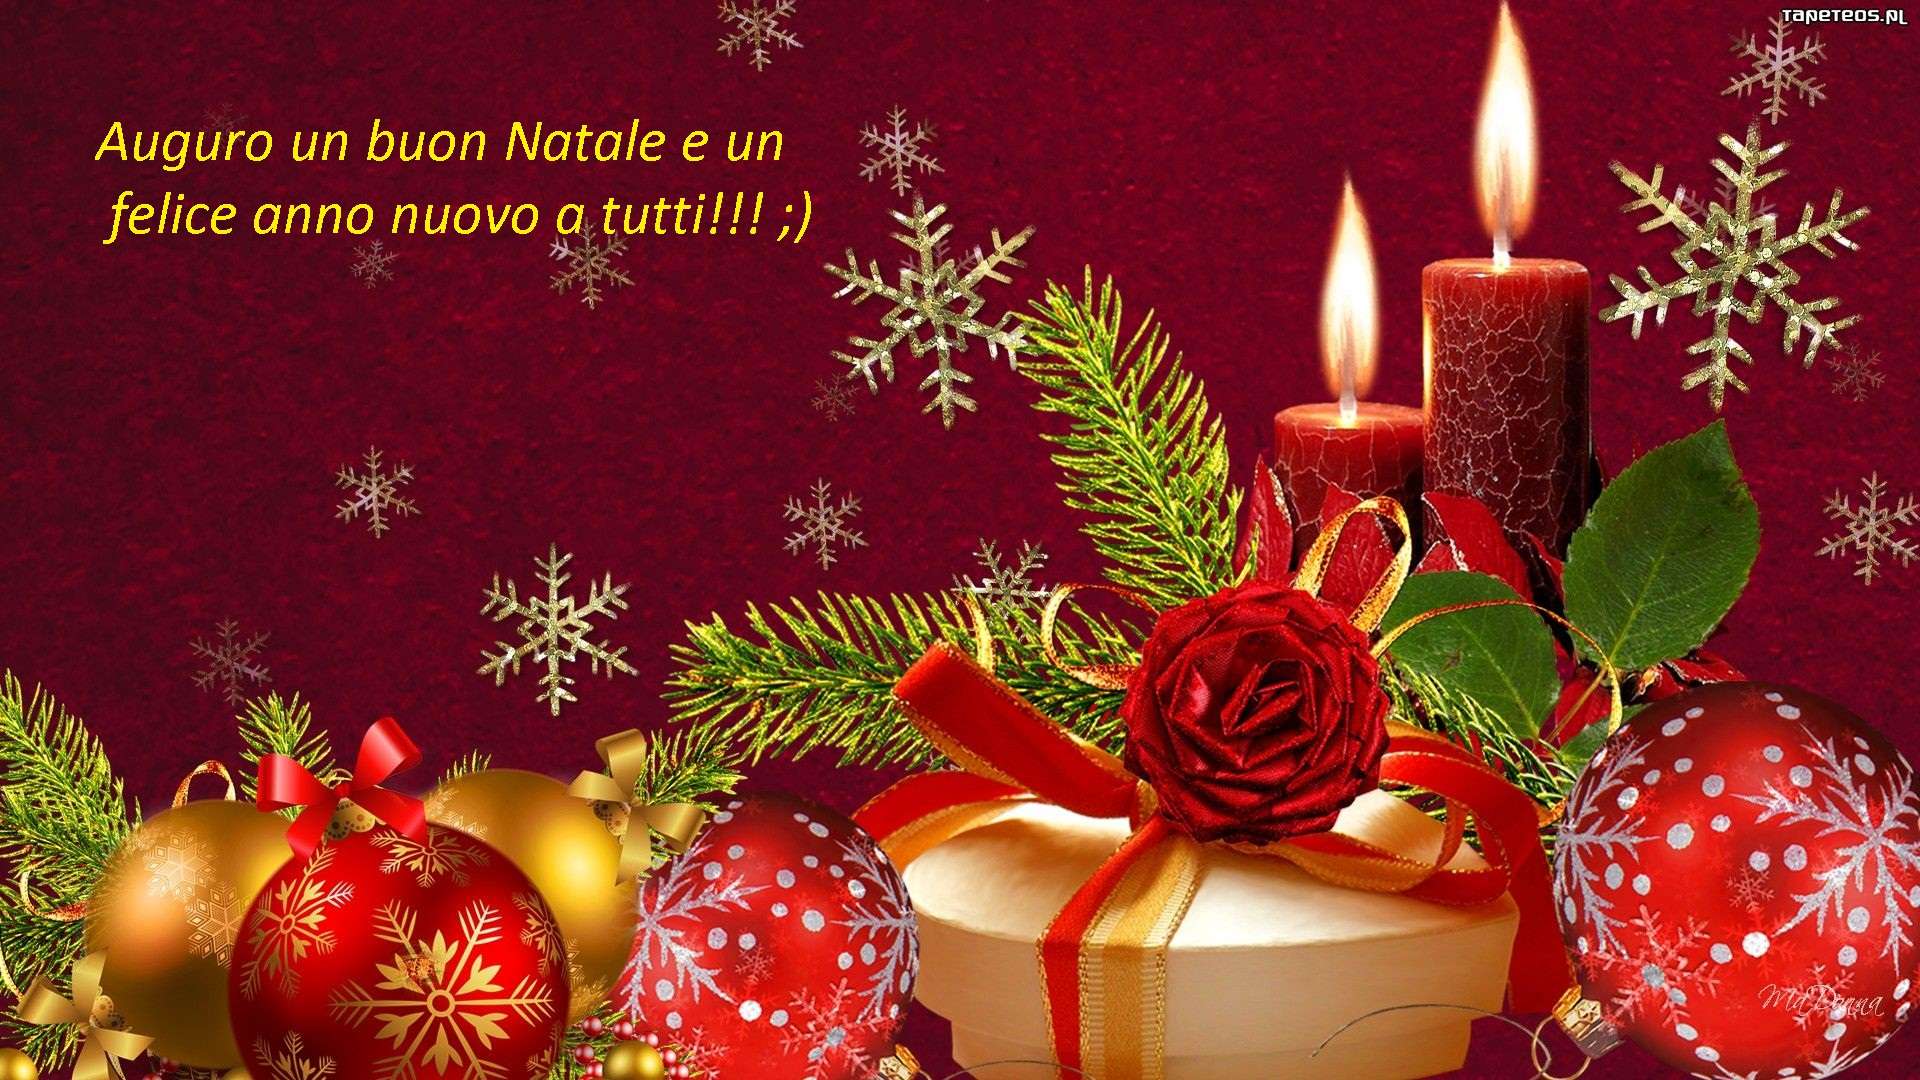 Foto Di Buon Natale E Felice Anno Nuovo.Auguri Di Buon Natale E Felice Anno Nuovo Baronerosso It Forum Modellismo